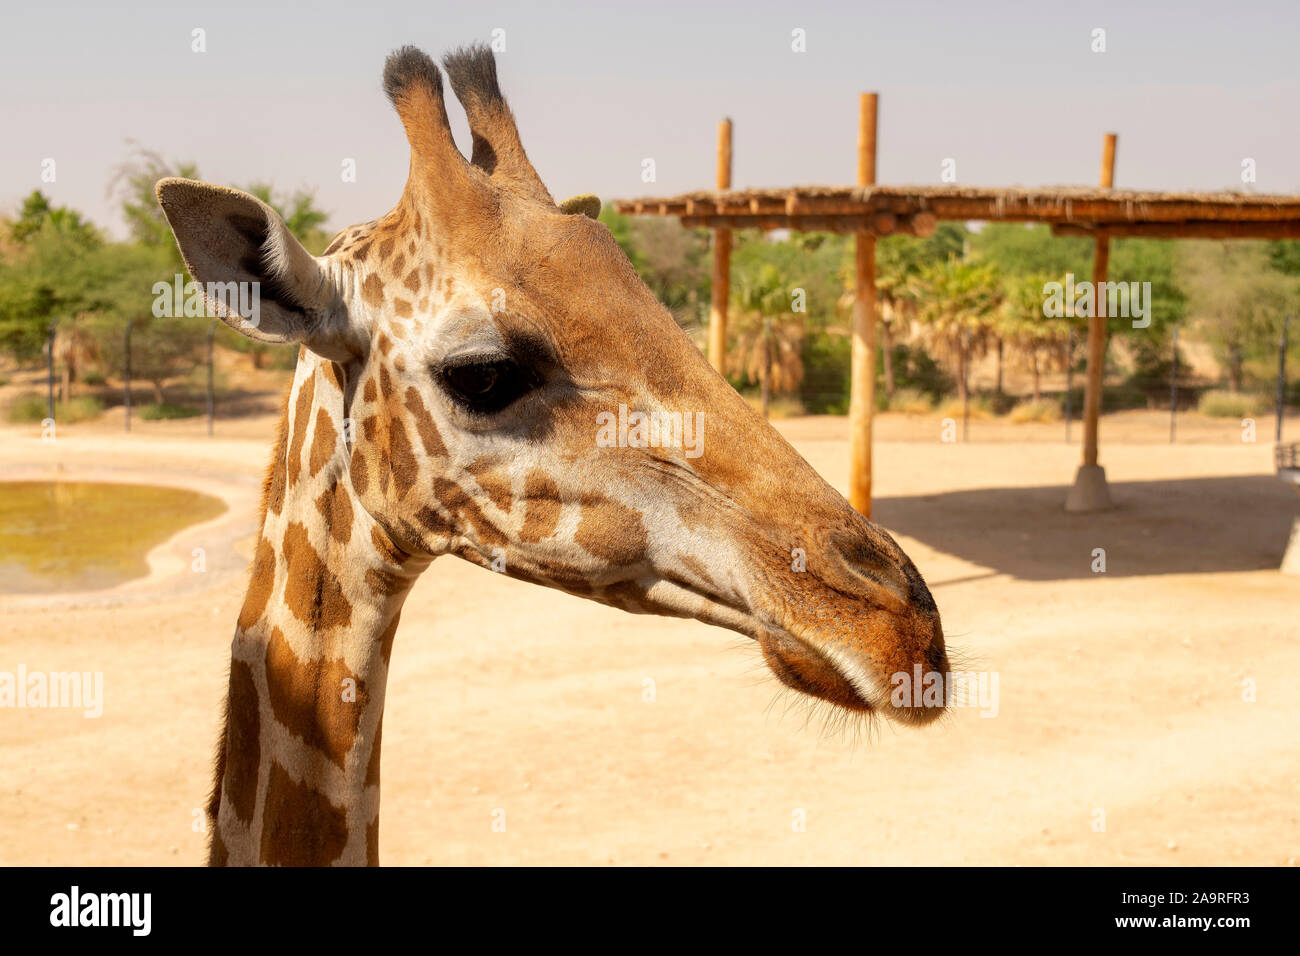 Schöne giraffe Gesicht, in der Nähe von Giraffen im Zoo. Giraffe Stockfoto